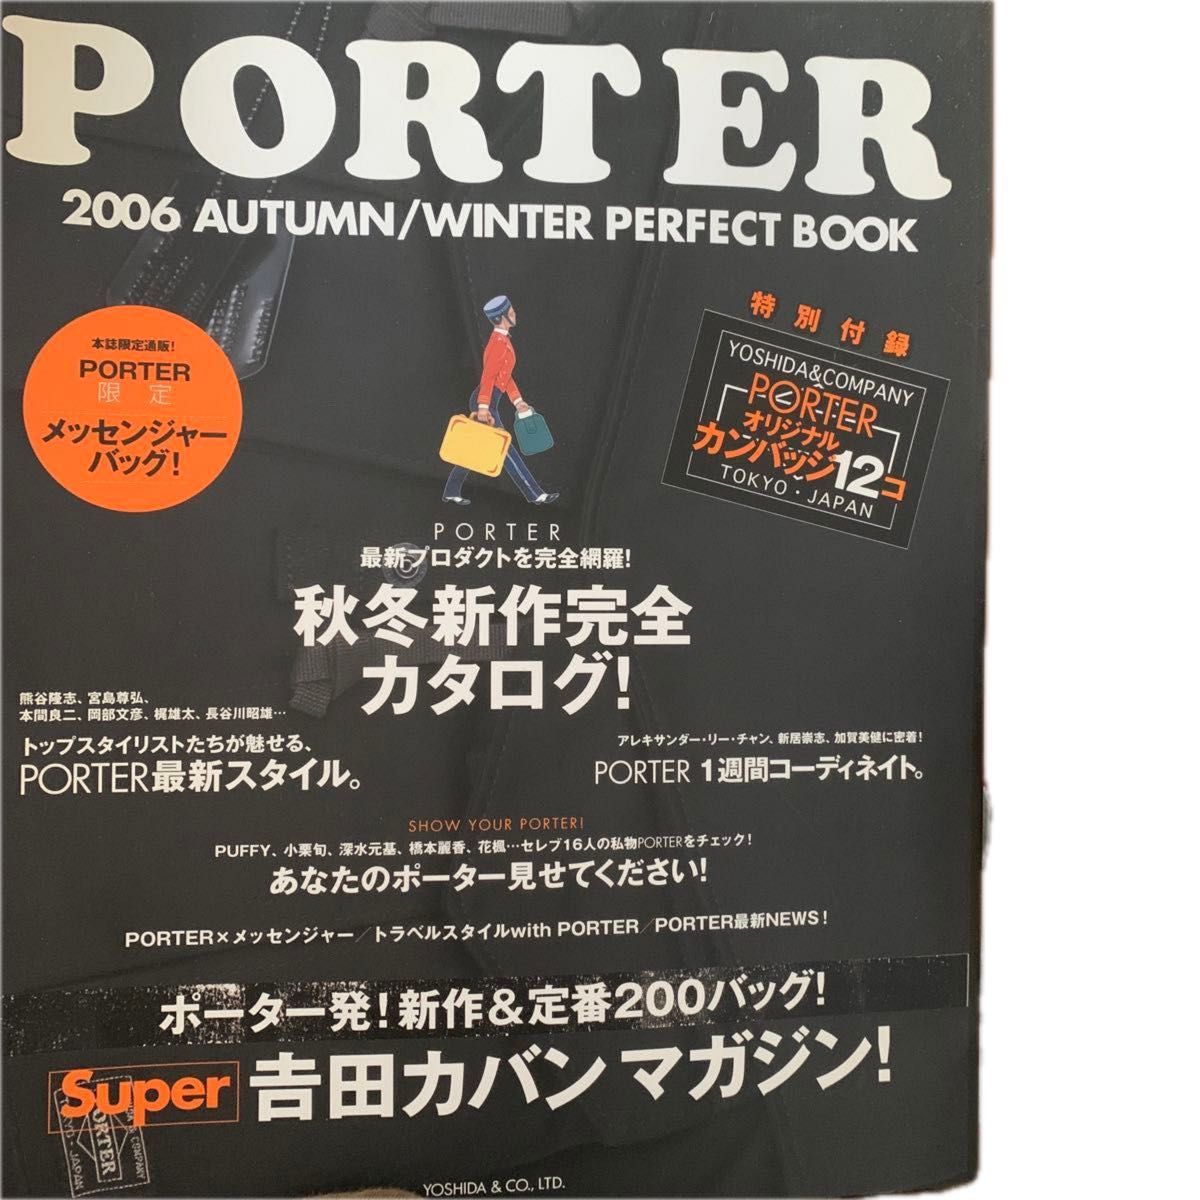 ムックその他 ≪生活暮らし≫ 付録付) PORTER 2006秋冬PERFECT BOOK